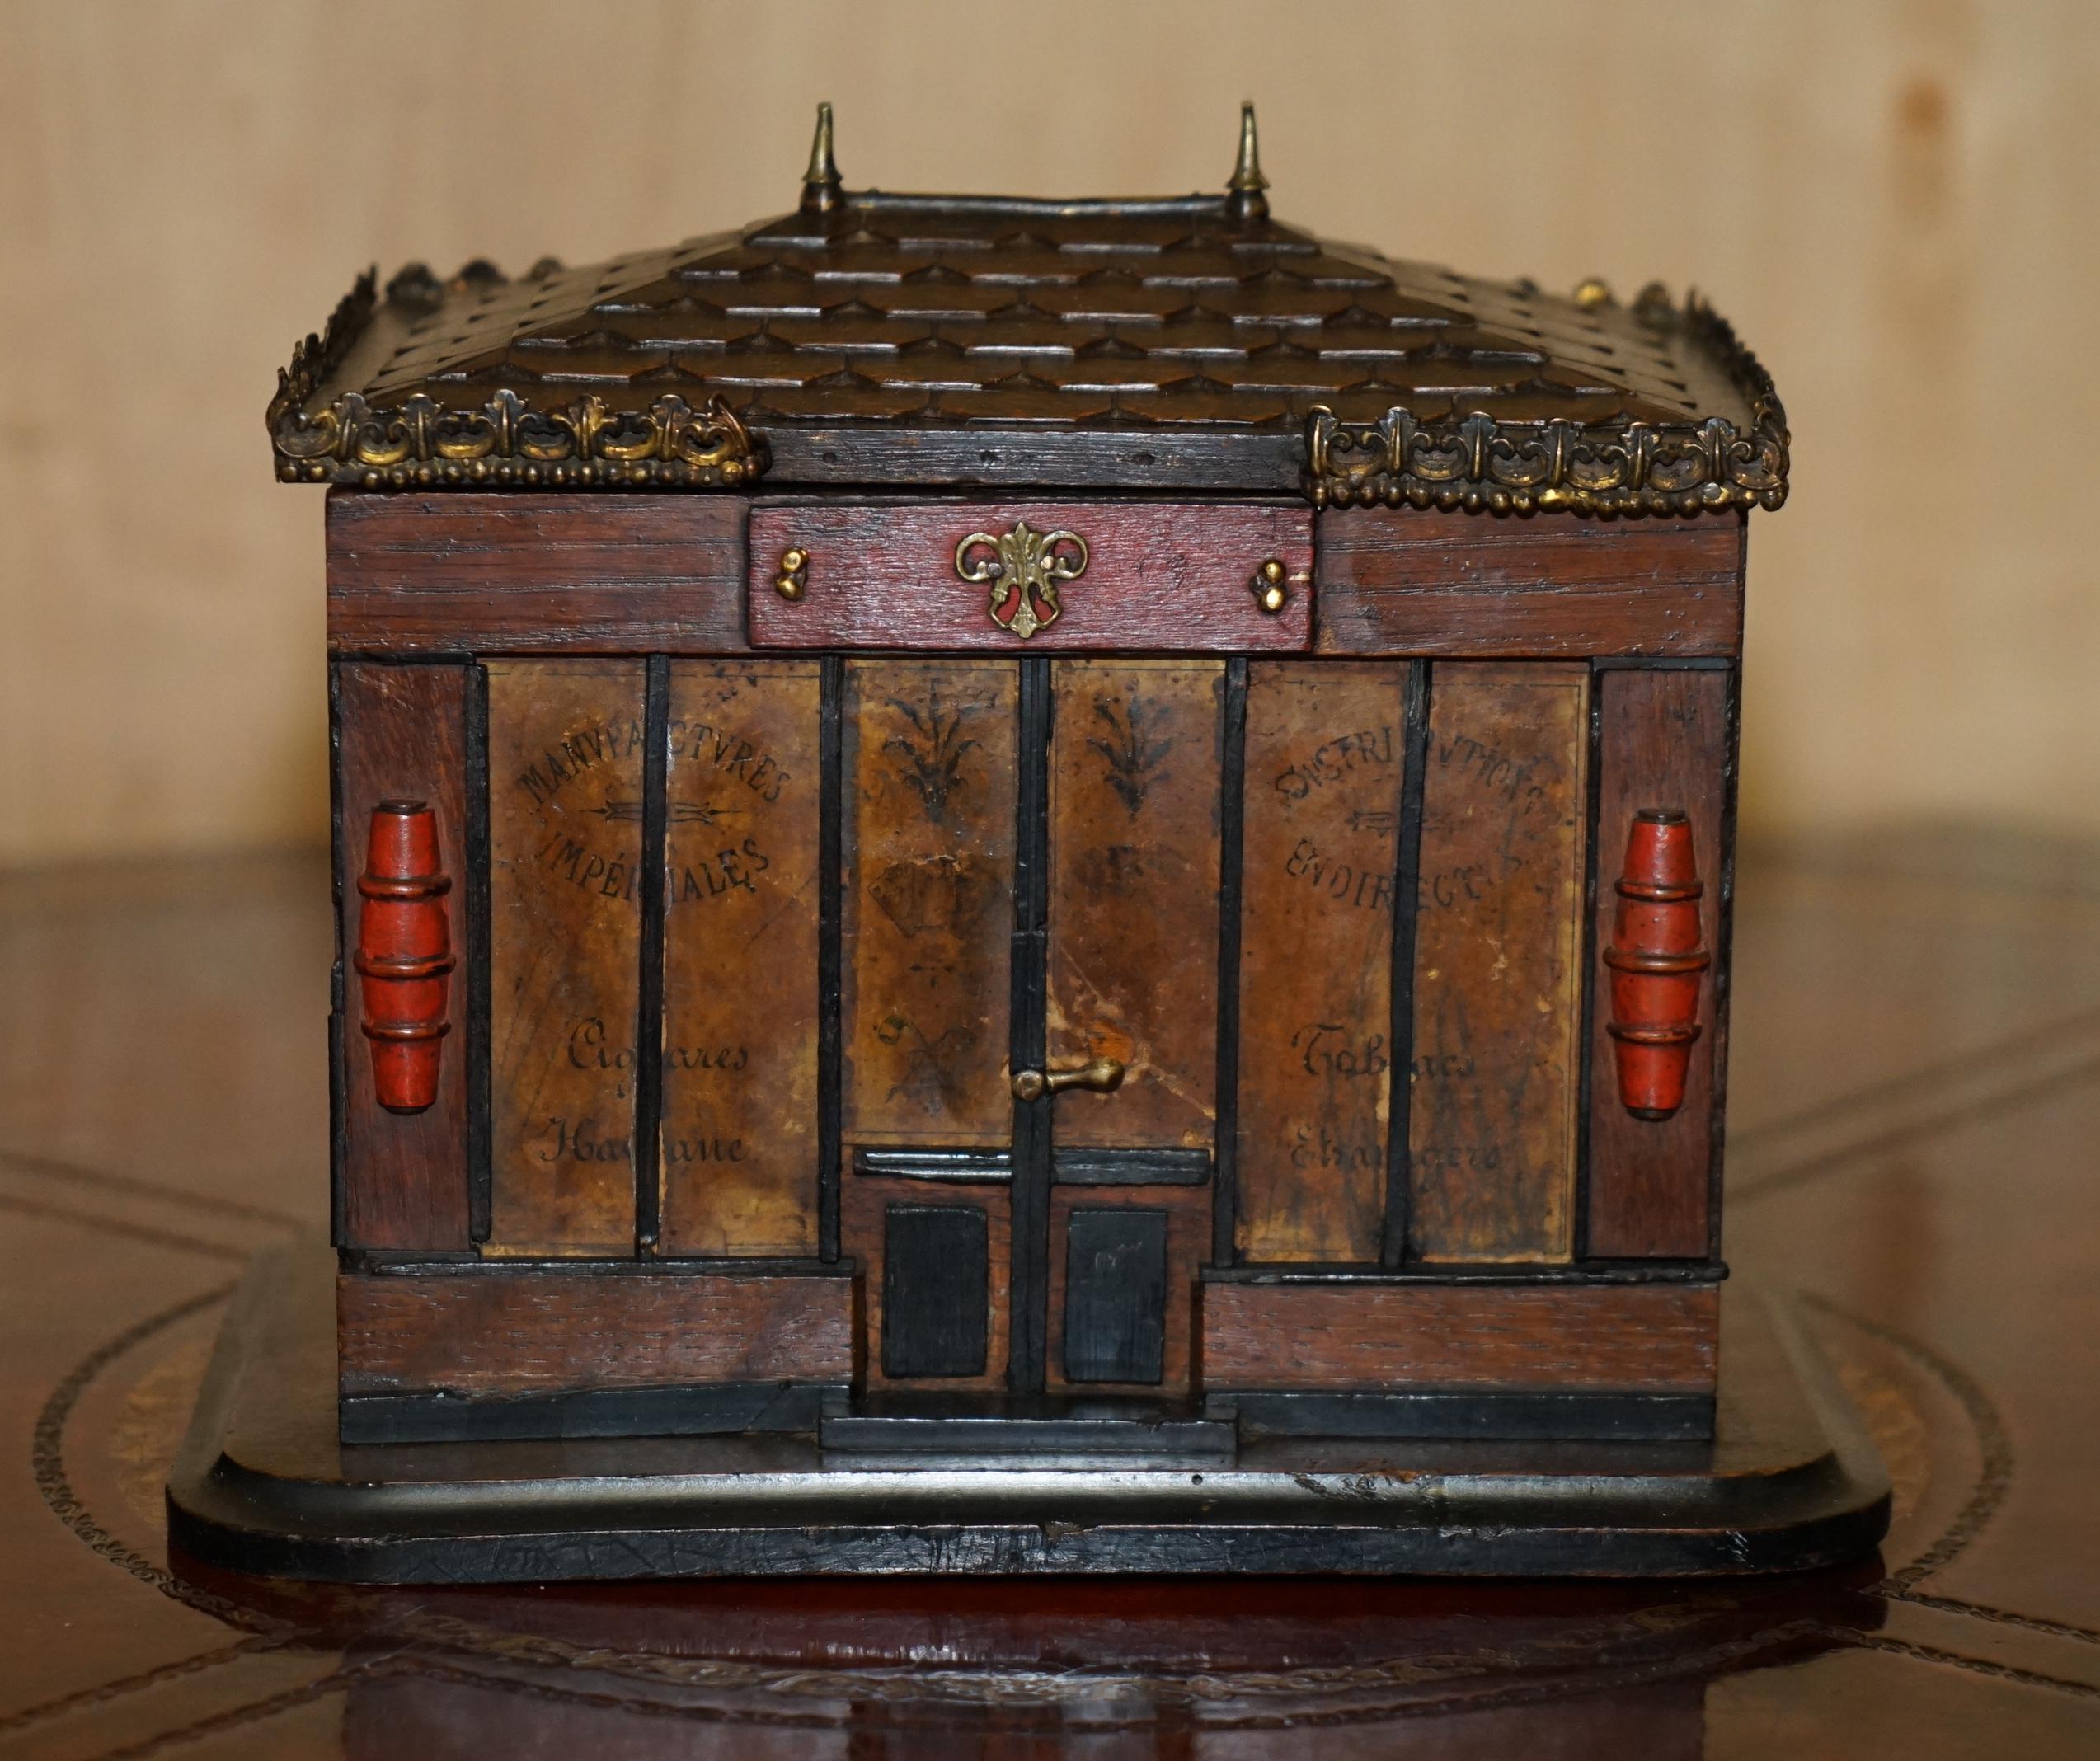 Royal House Antiques

The House Antiques a le plaisir d'offrir à la vente cette très belle boîte à cigares originale vers 1880-1900, de fabrication française, à couvercle en forme de pagode et de fabrication chinoise.

Il s'agit d'une pièce de très